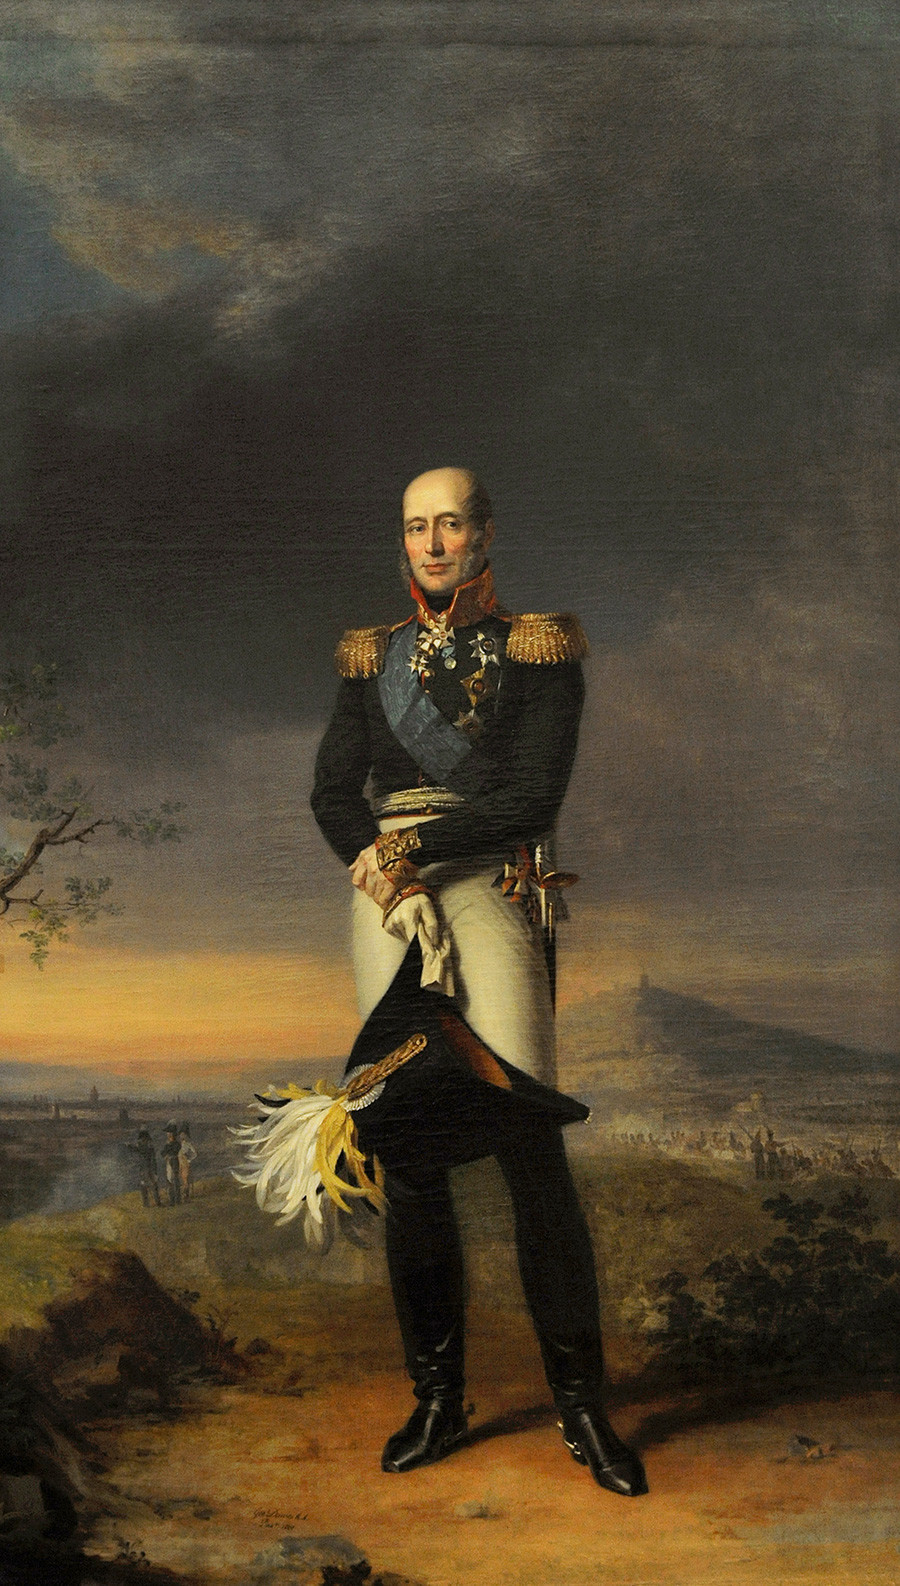 Mikhail B. Barclay de Tolly (1761-1818). Marsekal Lapangan Rusia dan Menteri Perang. Potret oleh George Dawe (1781-1829), 1829. Museum Hermitage, Sankt Peterburg, Rusia.

